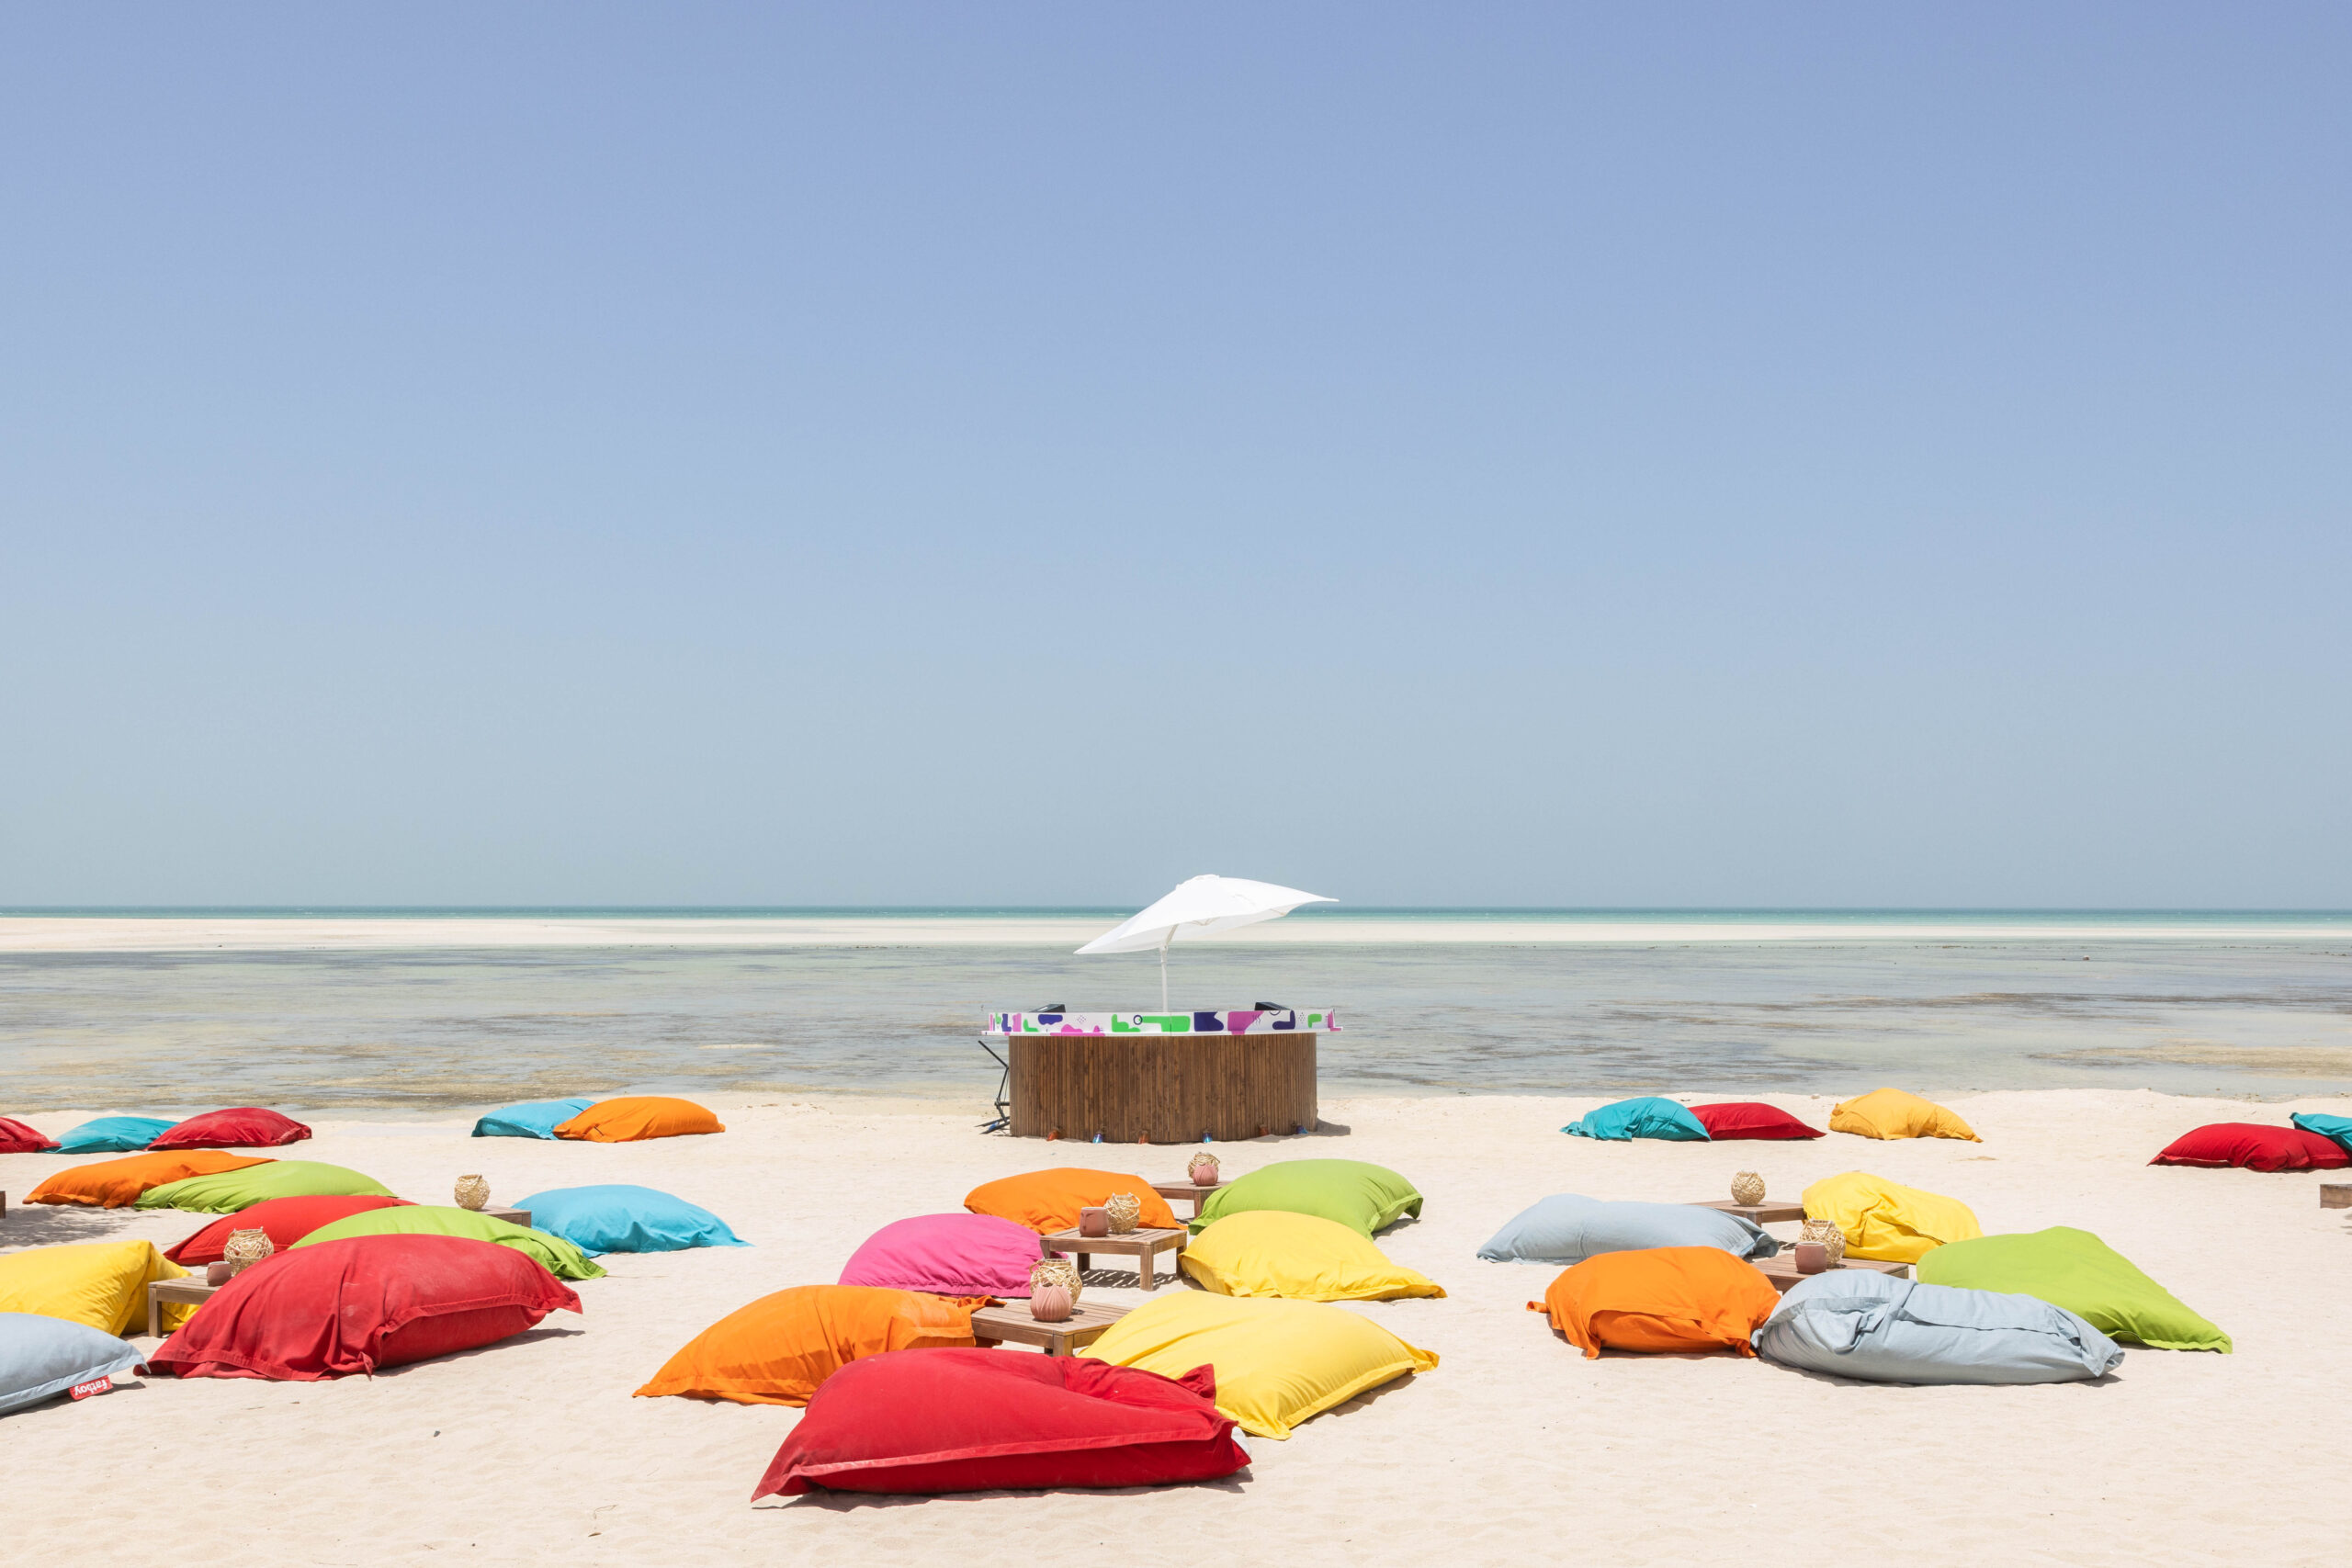 Qatar partners with GKA Kite World Tour, announces opening of new kite beach resort